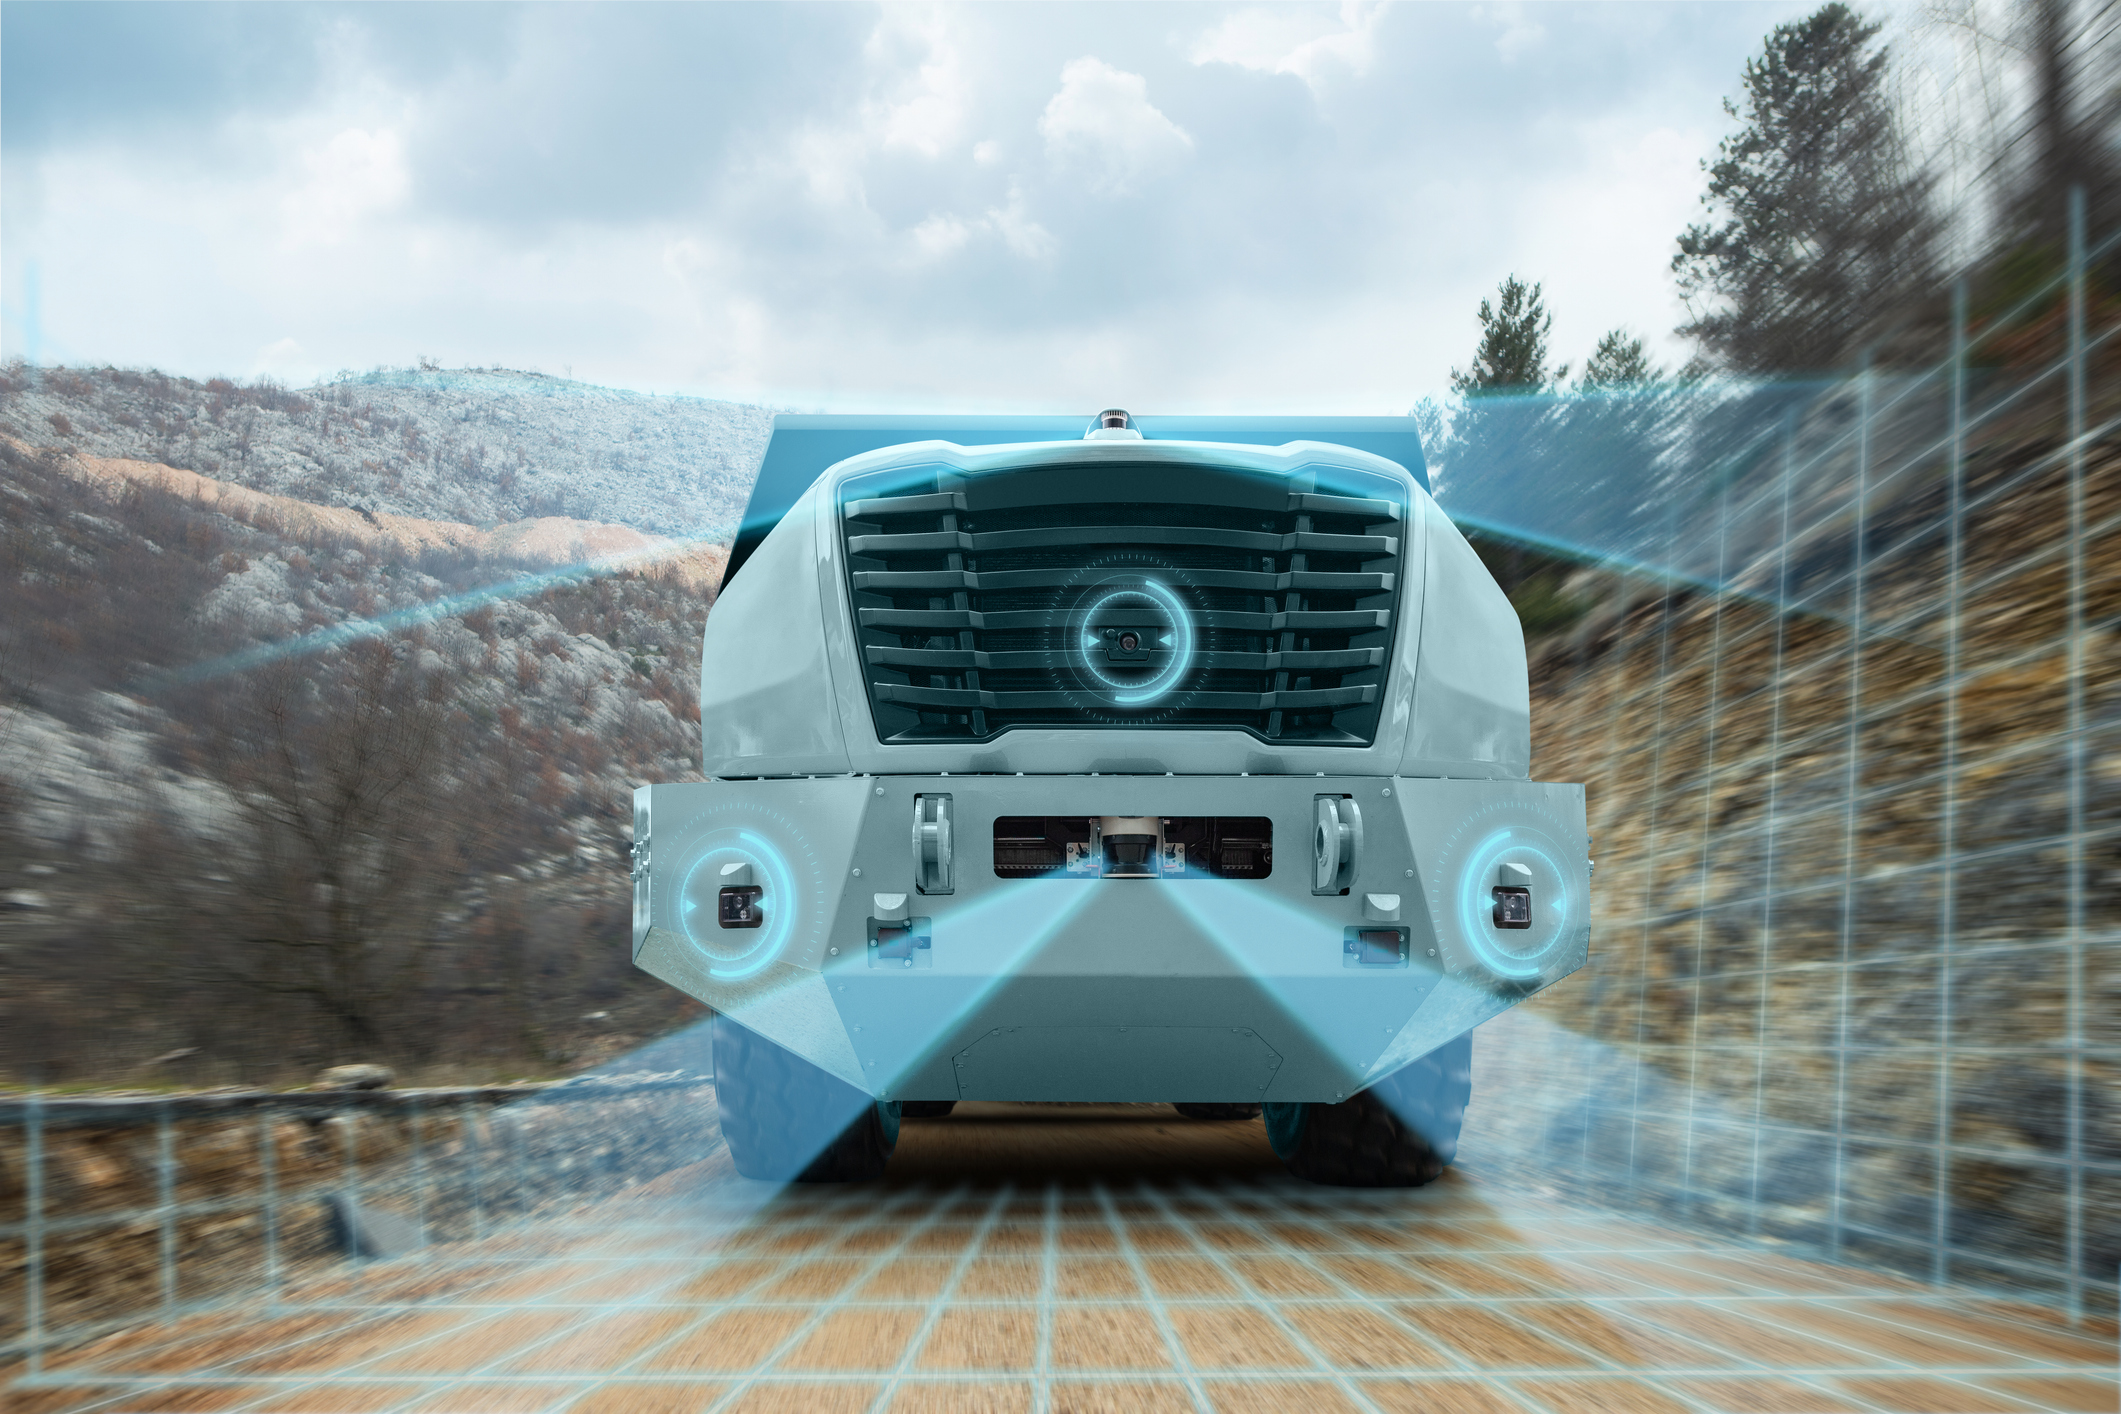 A futuristic truck using sensor fusion to navigate a difficult terrain